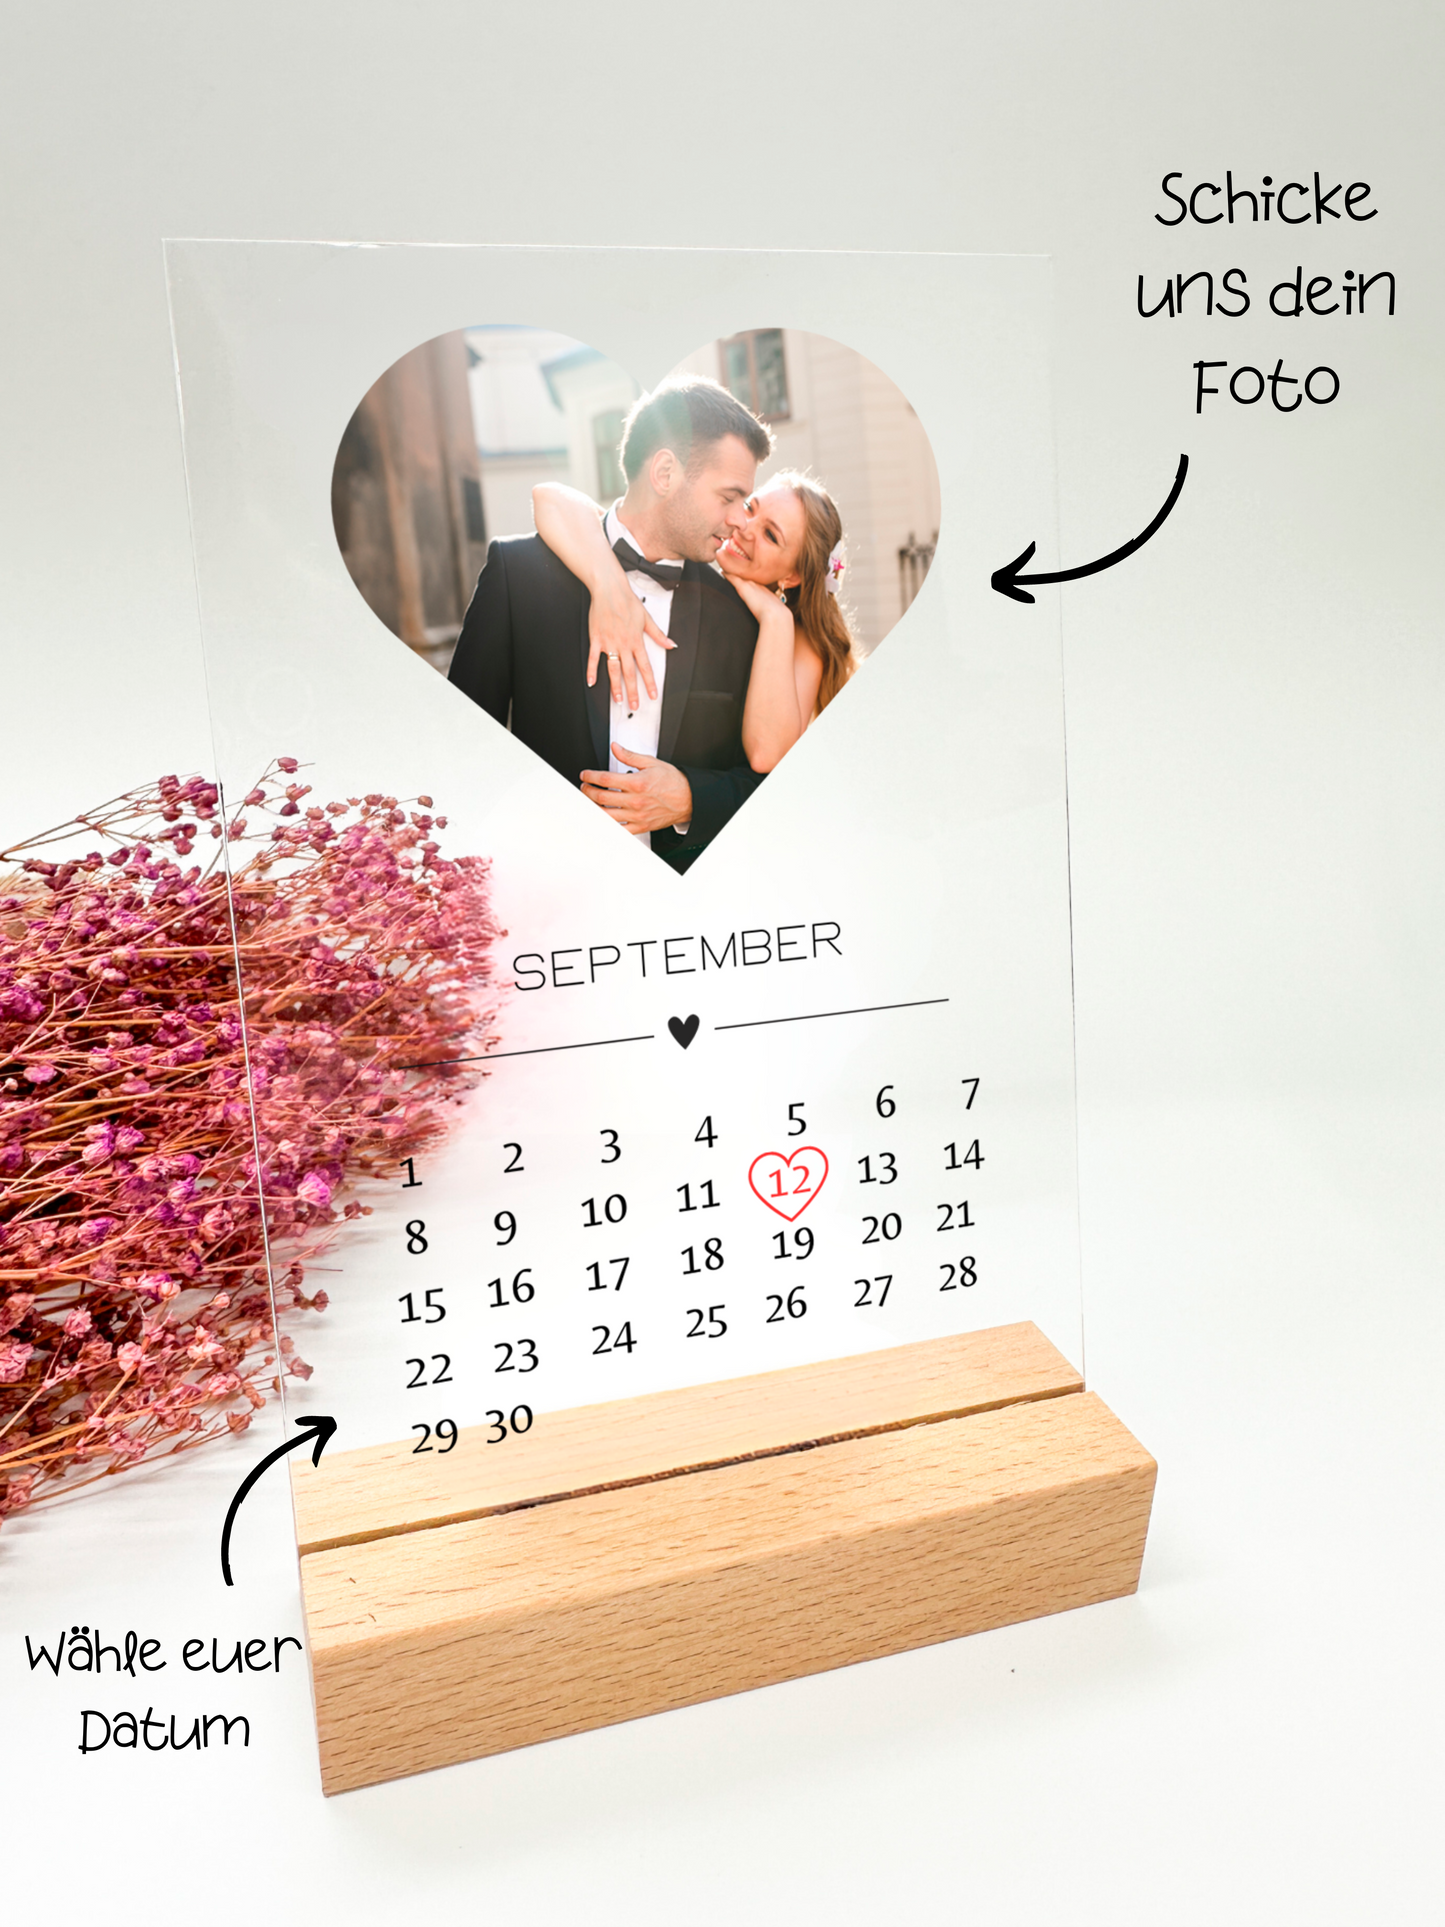 Hochzeitsfoto auf Acrylglas mit Kalender/Hochzeitsgeschenk/Geschenk zur Hochzeit